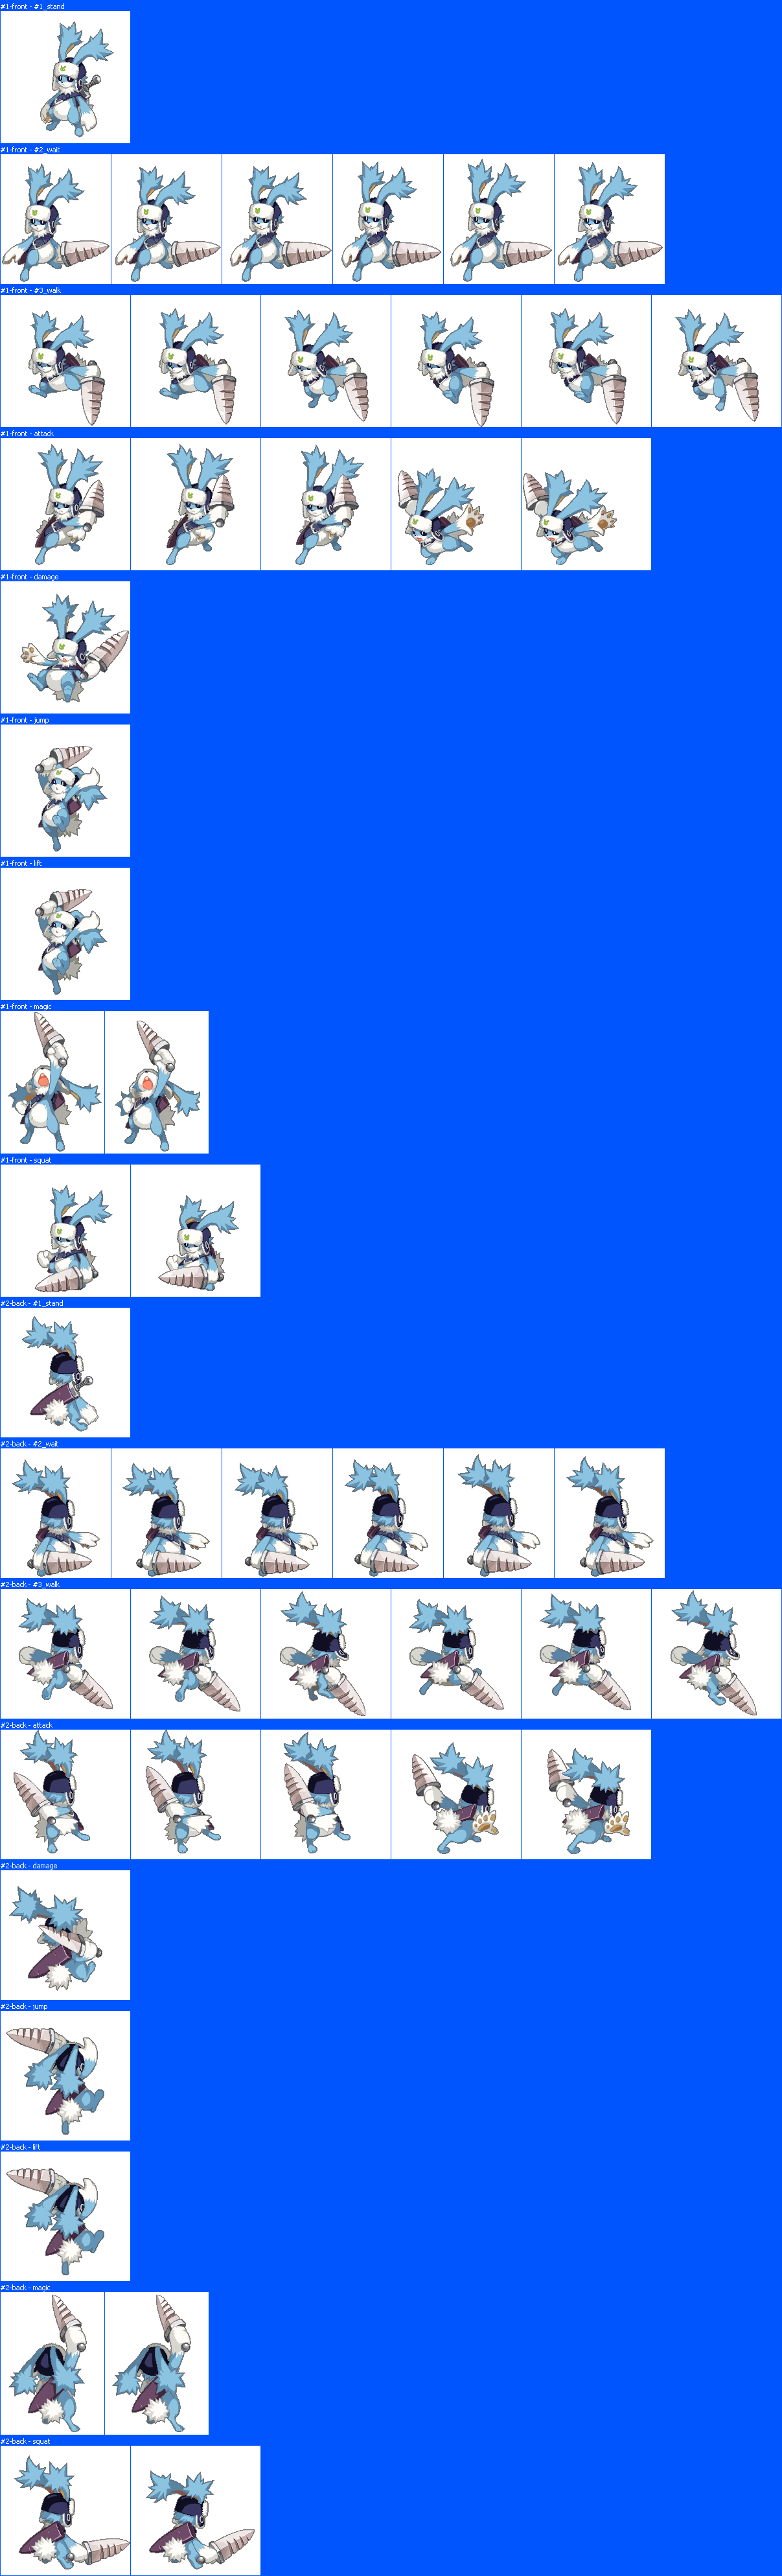 Disgaea RPG - Rabbit (Blue)